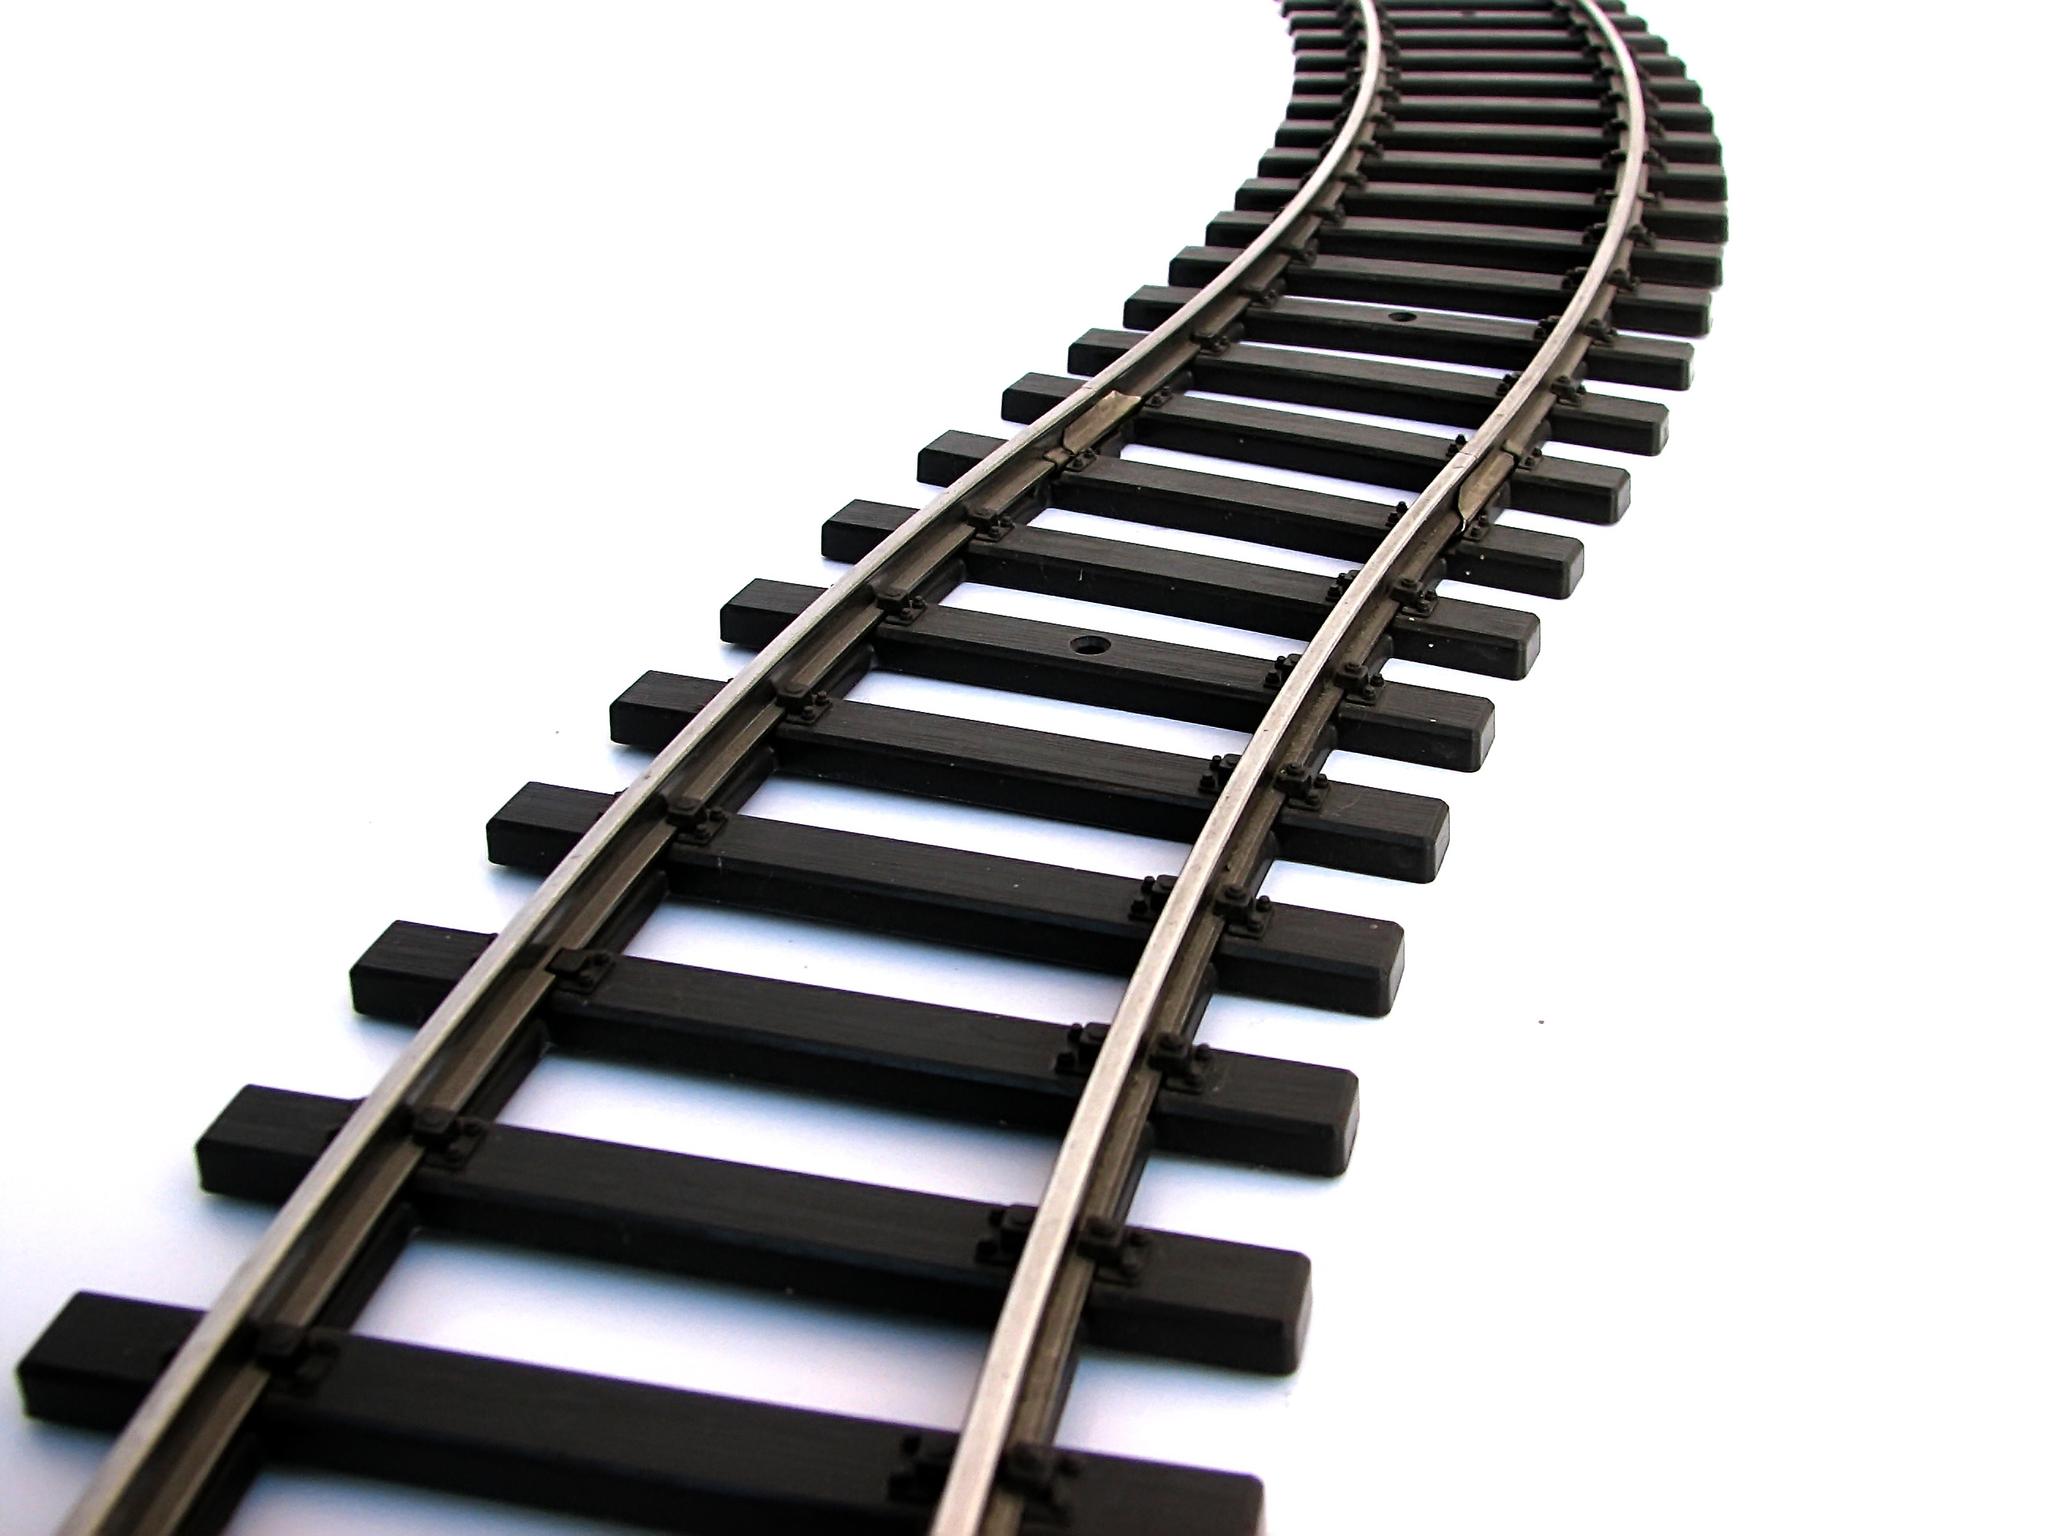 Train Track Clipart. Railroad - Railroad Track Clipart